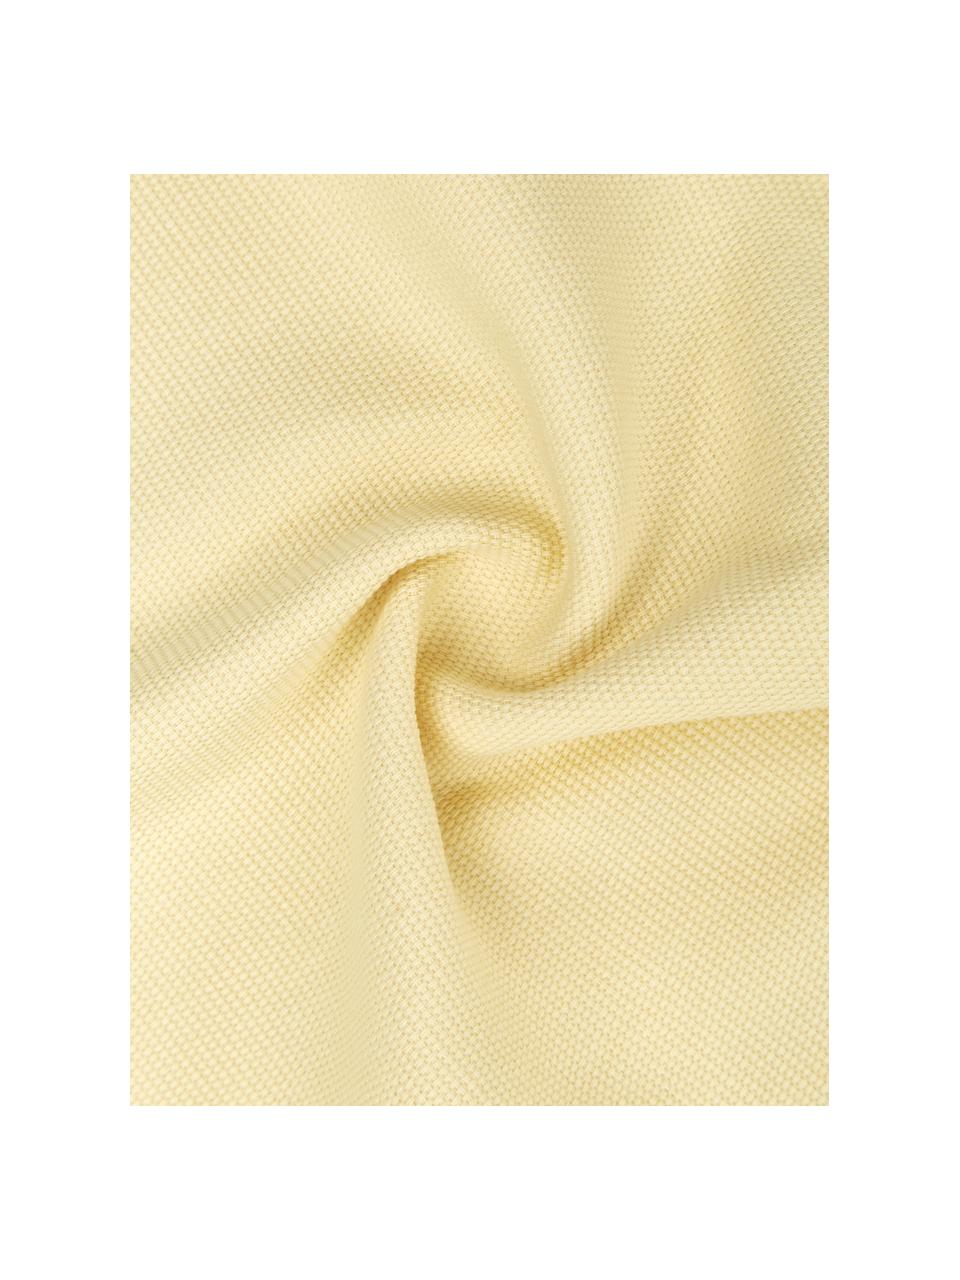 Federa arredo in cotone giallo chiaro Mads, 100% cotone, Giallo, Larg. 40 x Lung. 40 cm